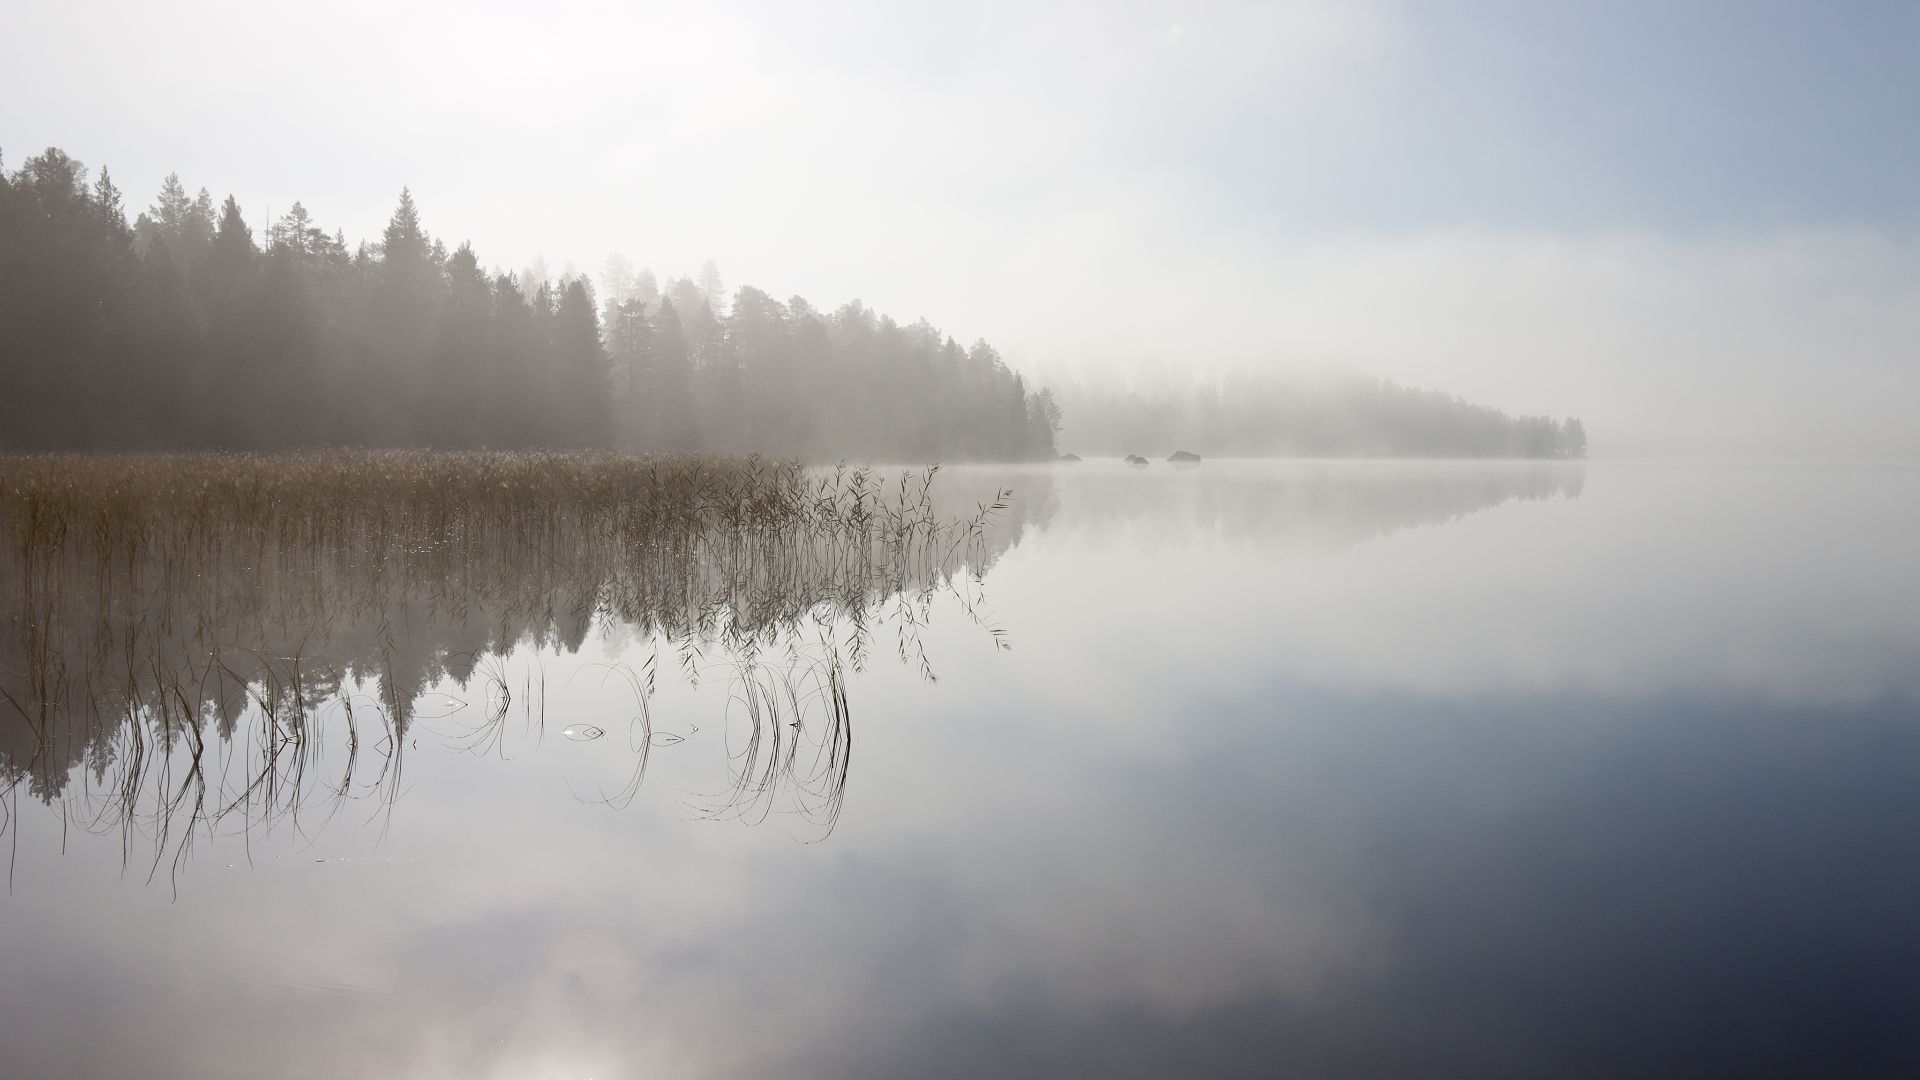 River, 5k, 4k wallpaper, fog, trees, sky (horizontal)